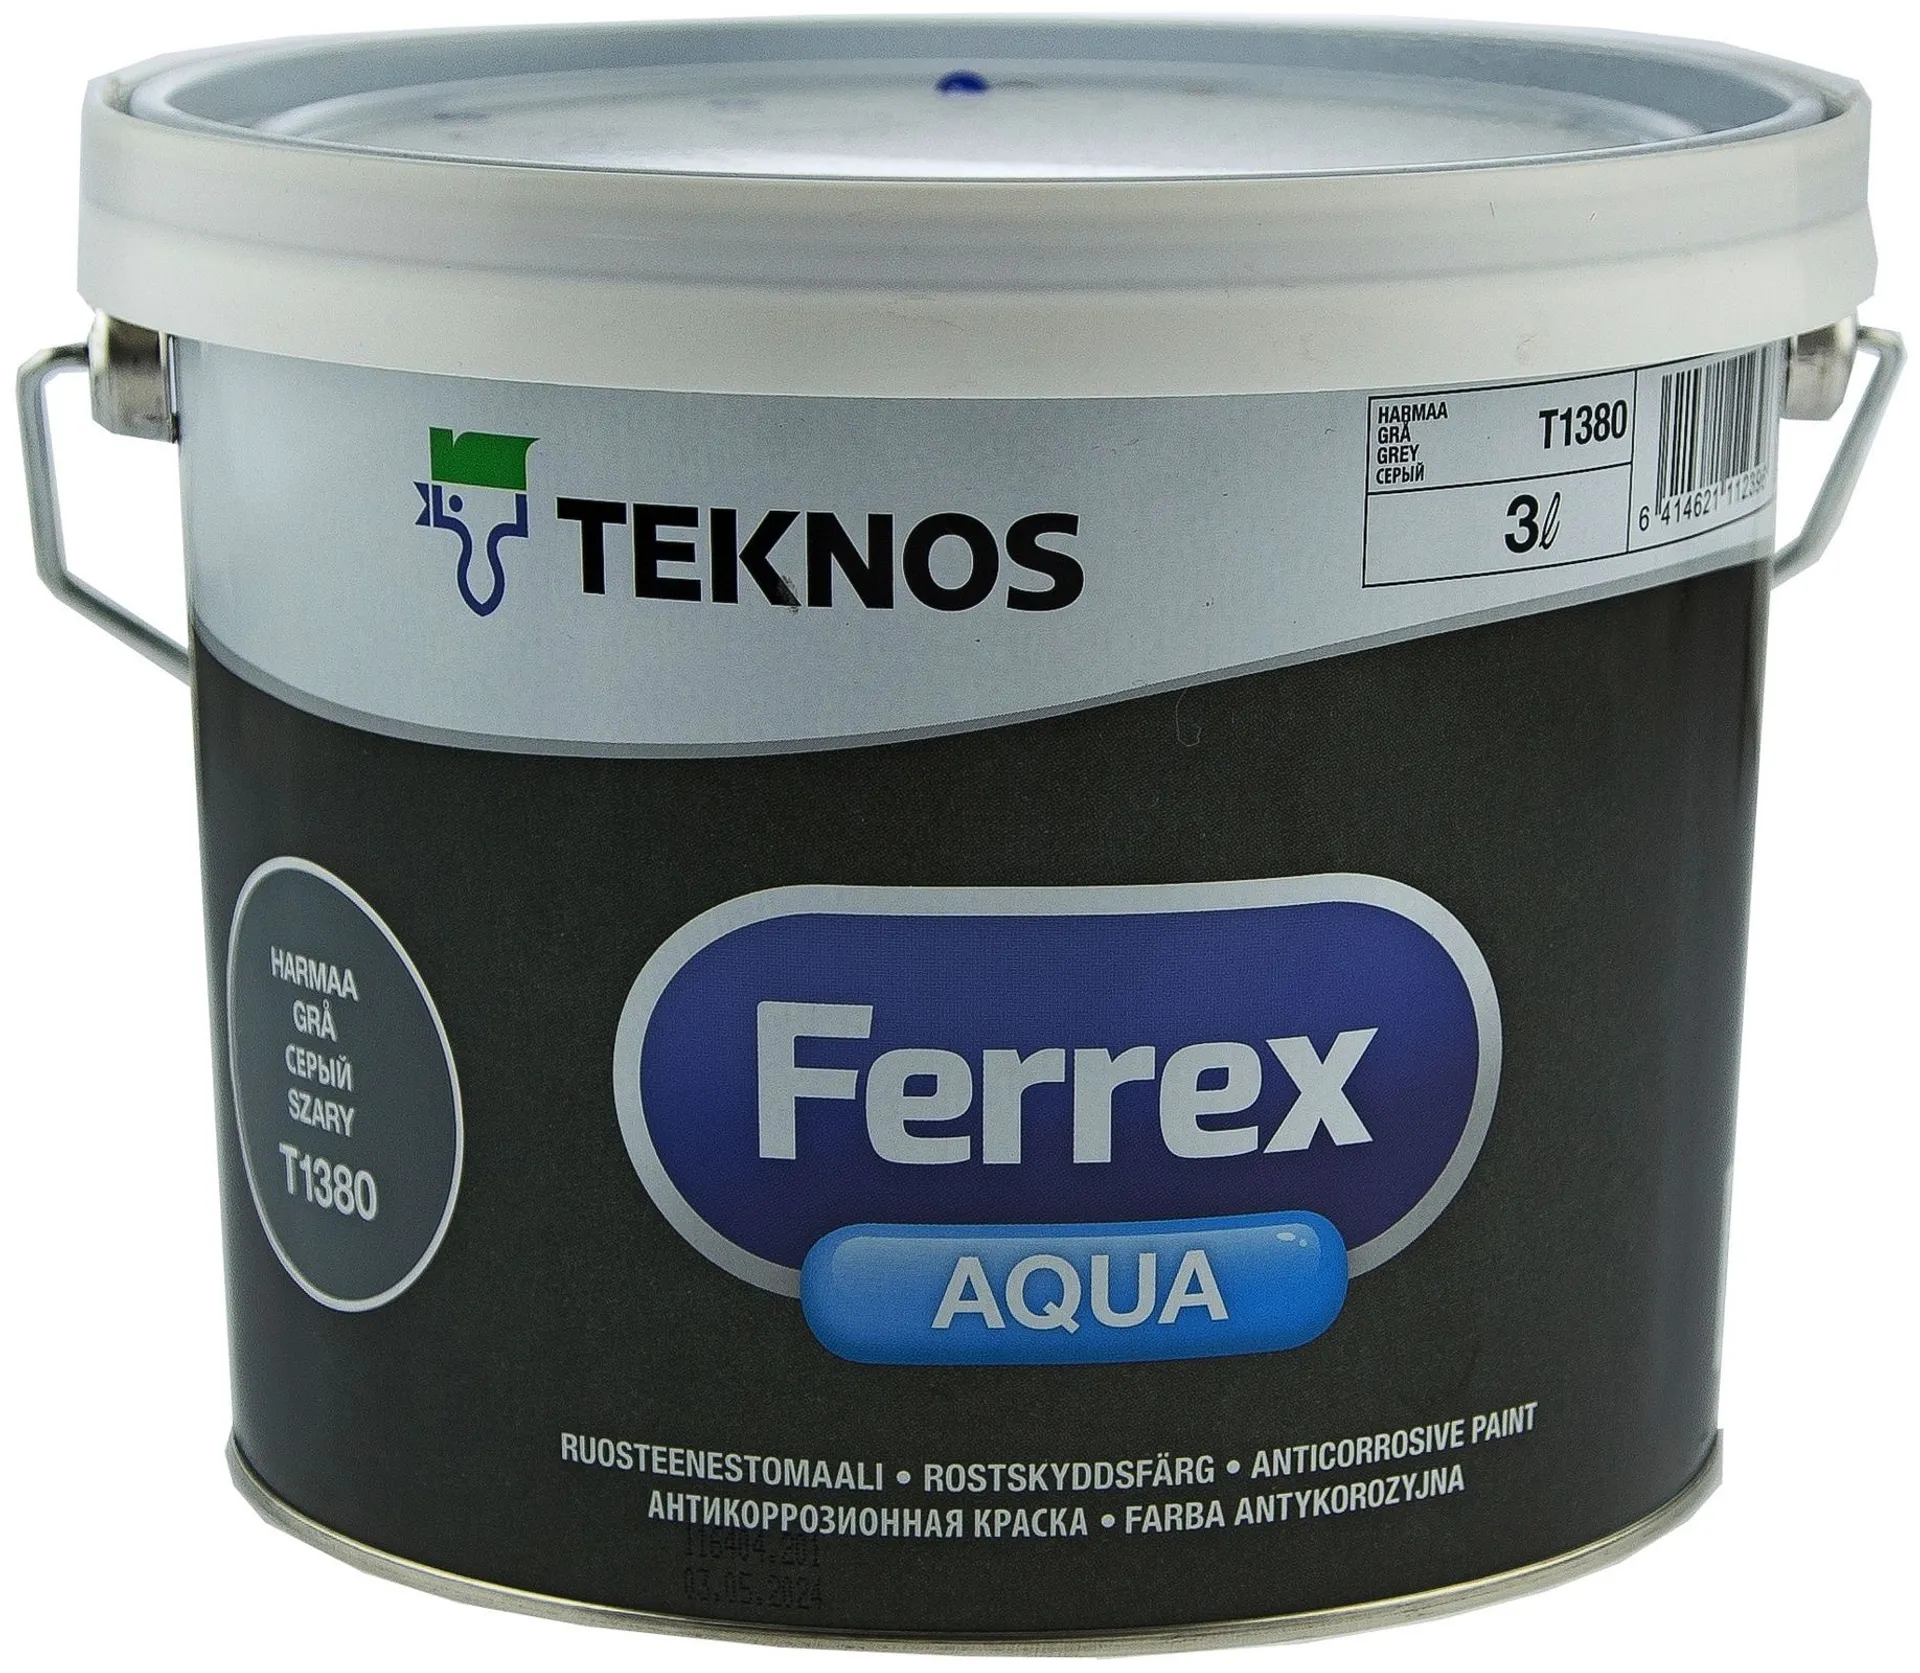 Teknos Ferrex Aqua ruosteenestomaali 3l harmaa